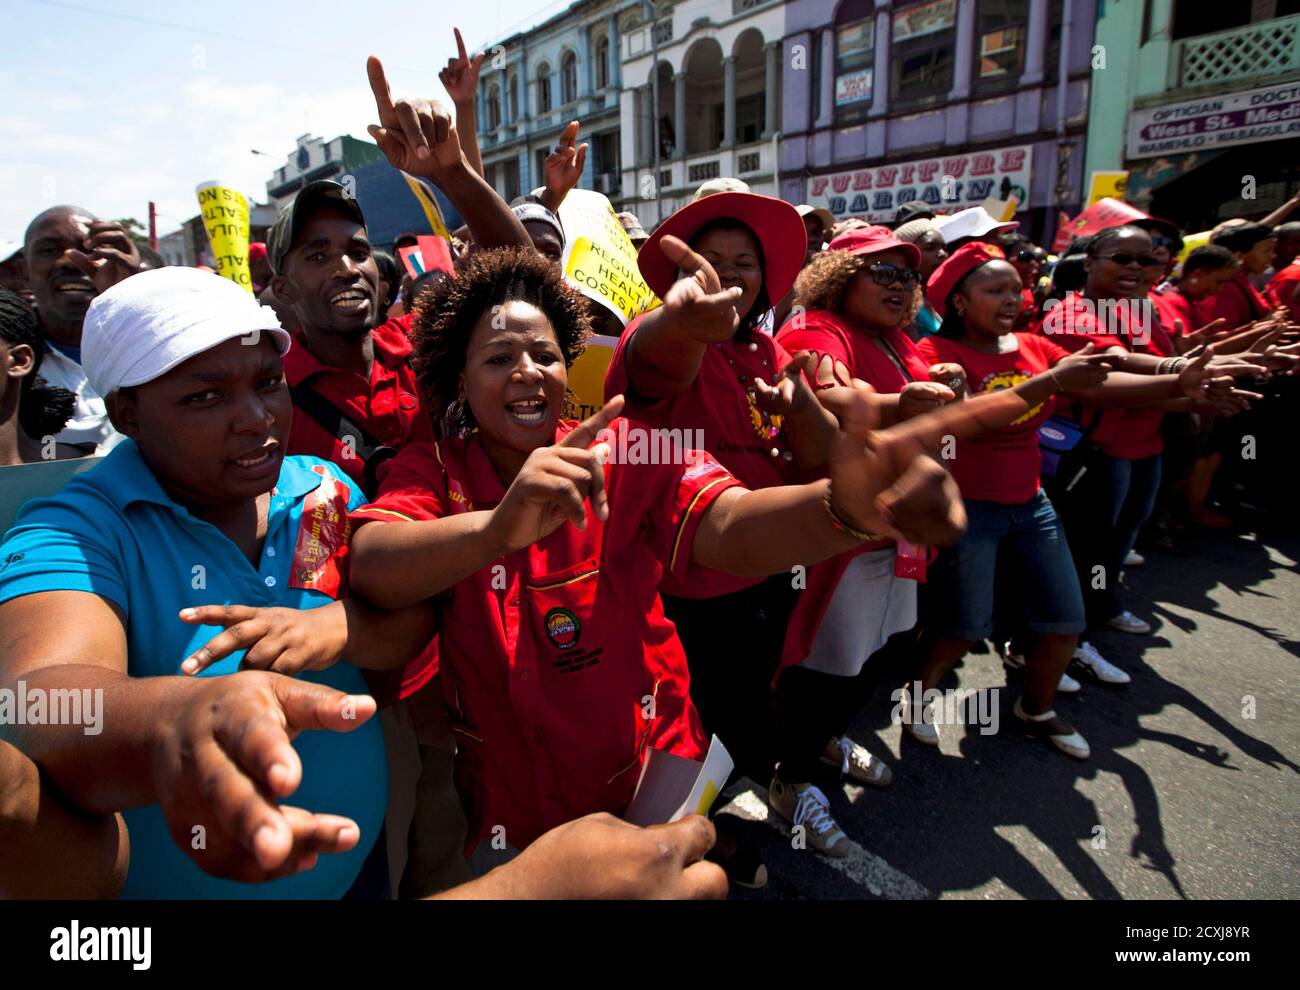 Streikende Mitglieder des Congresses of South African Trade Unions (COSATU) marschieren am 7. März 2012 durch das Stadtzentrum von Durban. Zehntausende Südafrikaner haben am Mittwoch einen eintägigen Nationalstreik durchgeführt und die Bergbauproduktion getroffen, als die größte Arbeitergruppe in der größten Volkswirtschaft des Kontinents ihre Muskeln beugte, um den regierenden Afrikanischen Nationalkongress (ANC) an seine politische Stärke zu erinnern. Die unmittelbaren Ziele des Streiks sind neue Straßenmaut in Johannesburg und kurzfristige Arbeitsagenturen, von denen COSATU sagt, dass sie Arbeitnehmer ausbeuten und die Ungleichheiten des Apars der weißen Minderheit aufrechterhalten Stockfoto